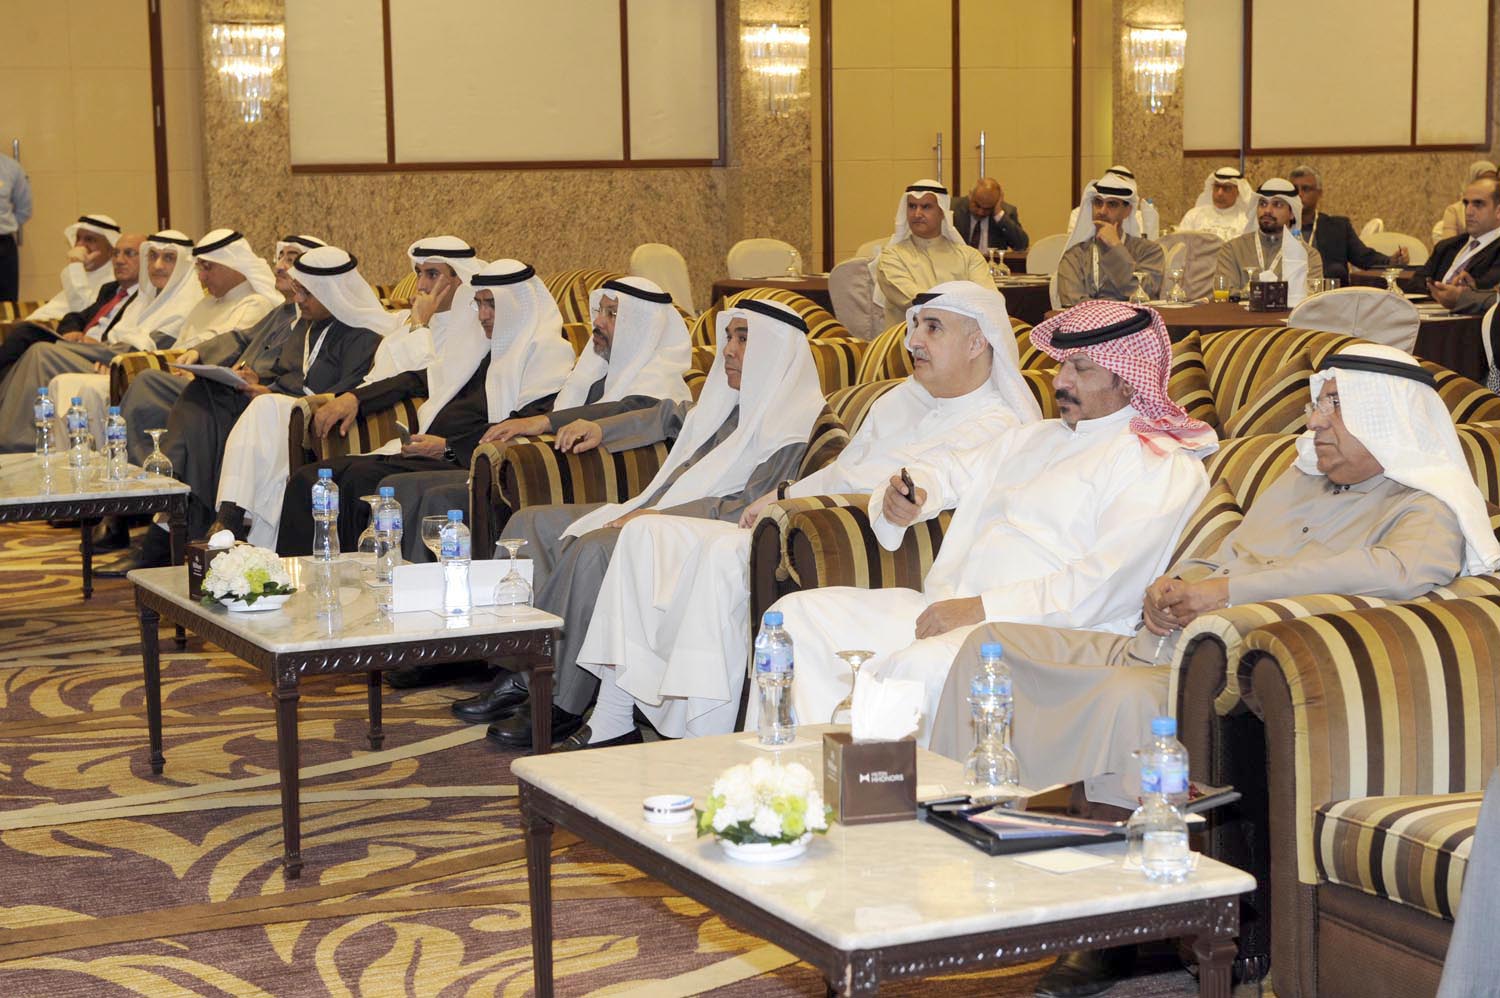 الرئيس التنفيذي في مؤسسة البترول الكويتية نزار العدساني يتوسط الحضور خلال افتتاح مؤتمر التدقيق الداخلي لدول مجلس التعاون الخليجي